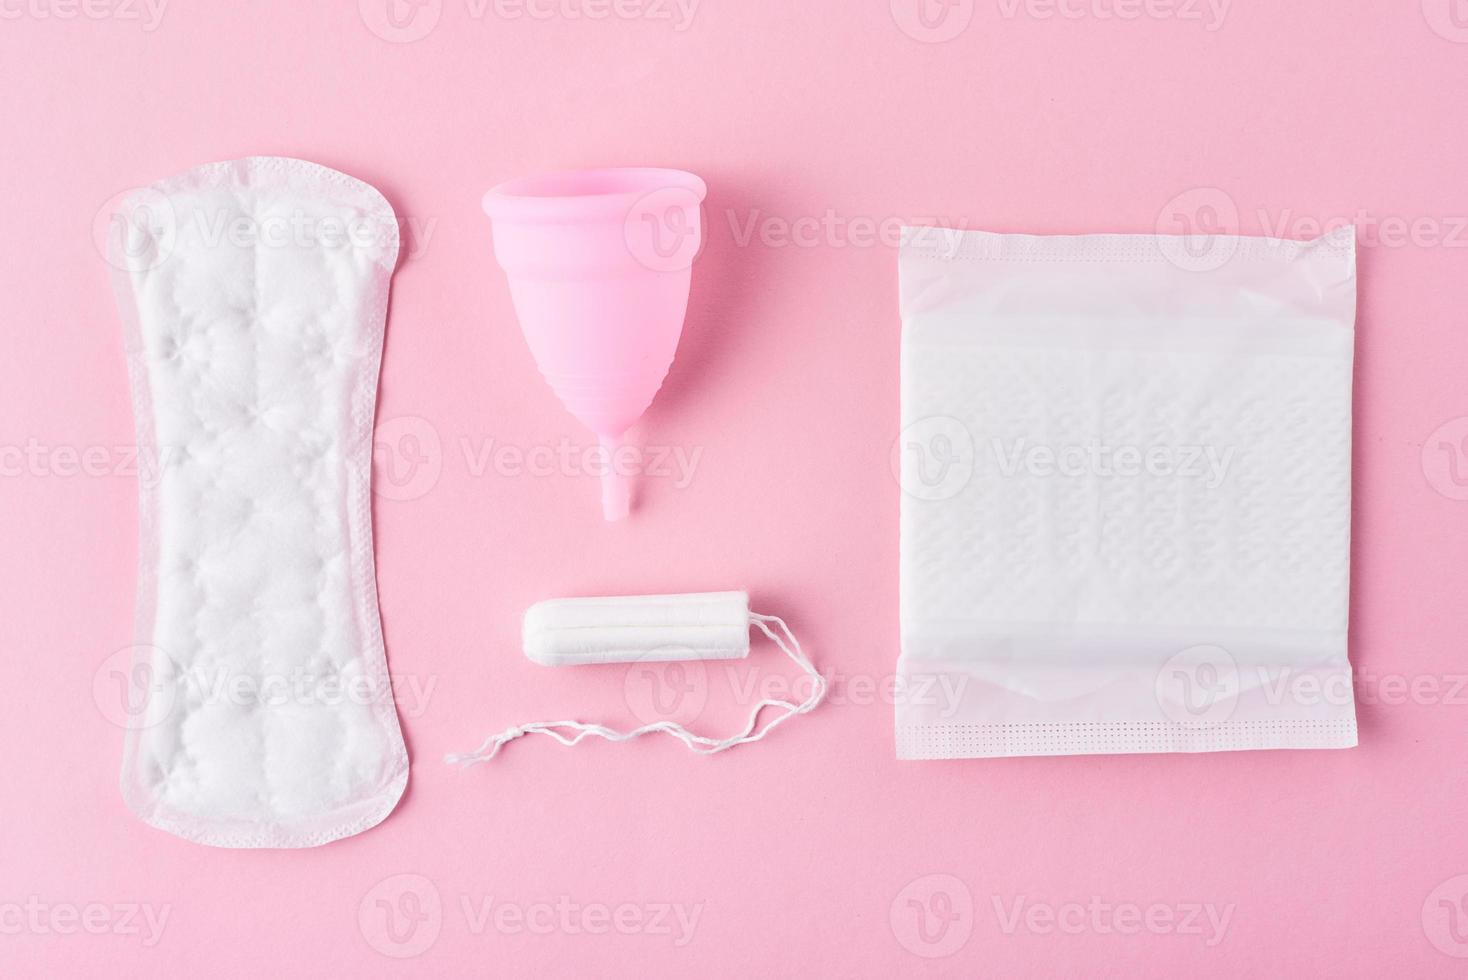 serviette hygiénique, coupe menstruelle et tampon sur fond rose, vue de dessus photo